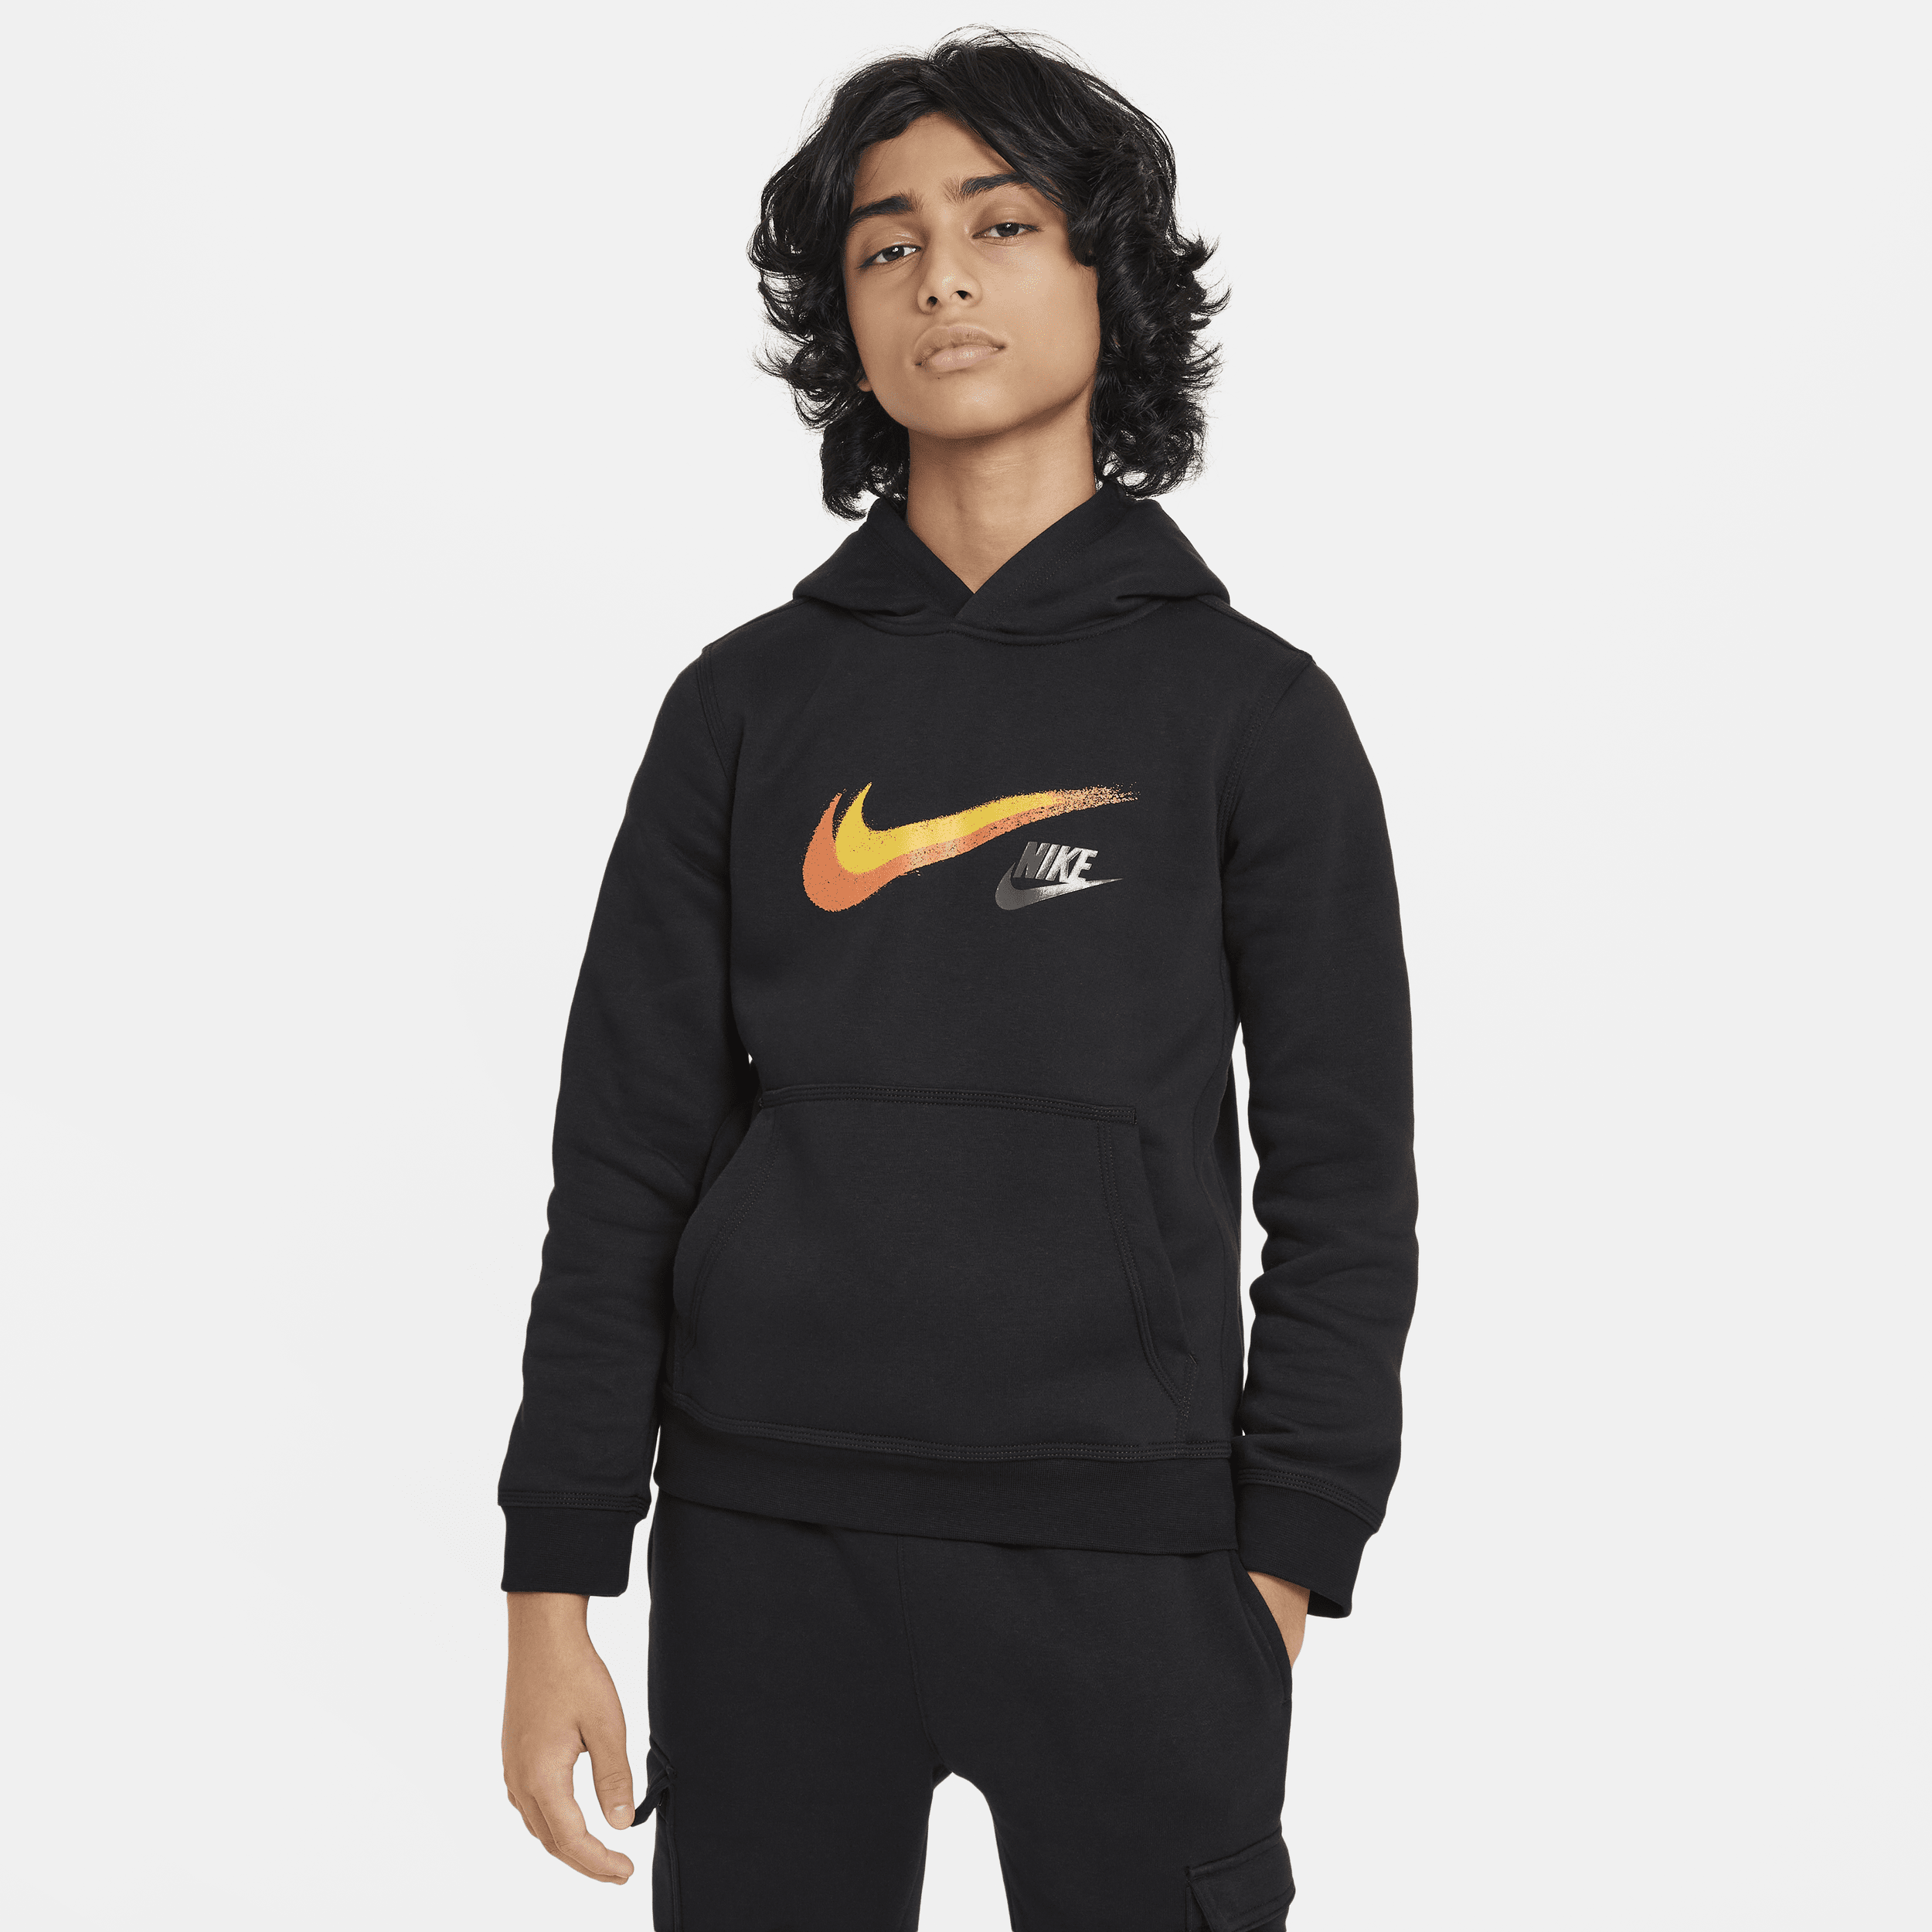 Nike Sportswear fleecehoodie met graphic voor jongens - Zwart